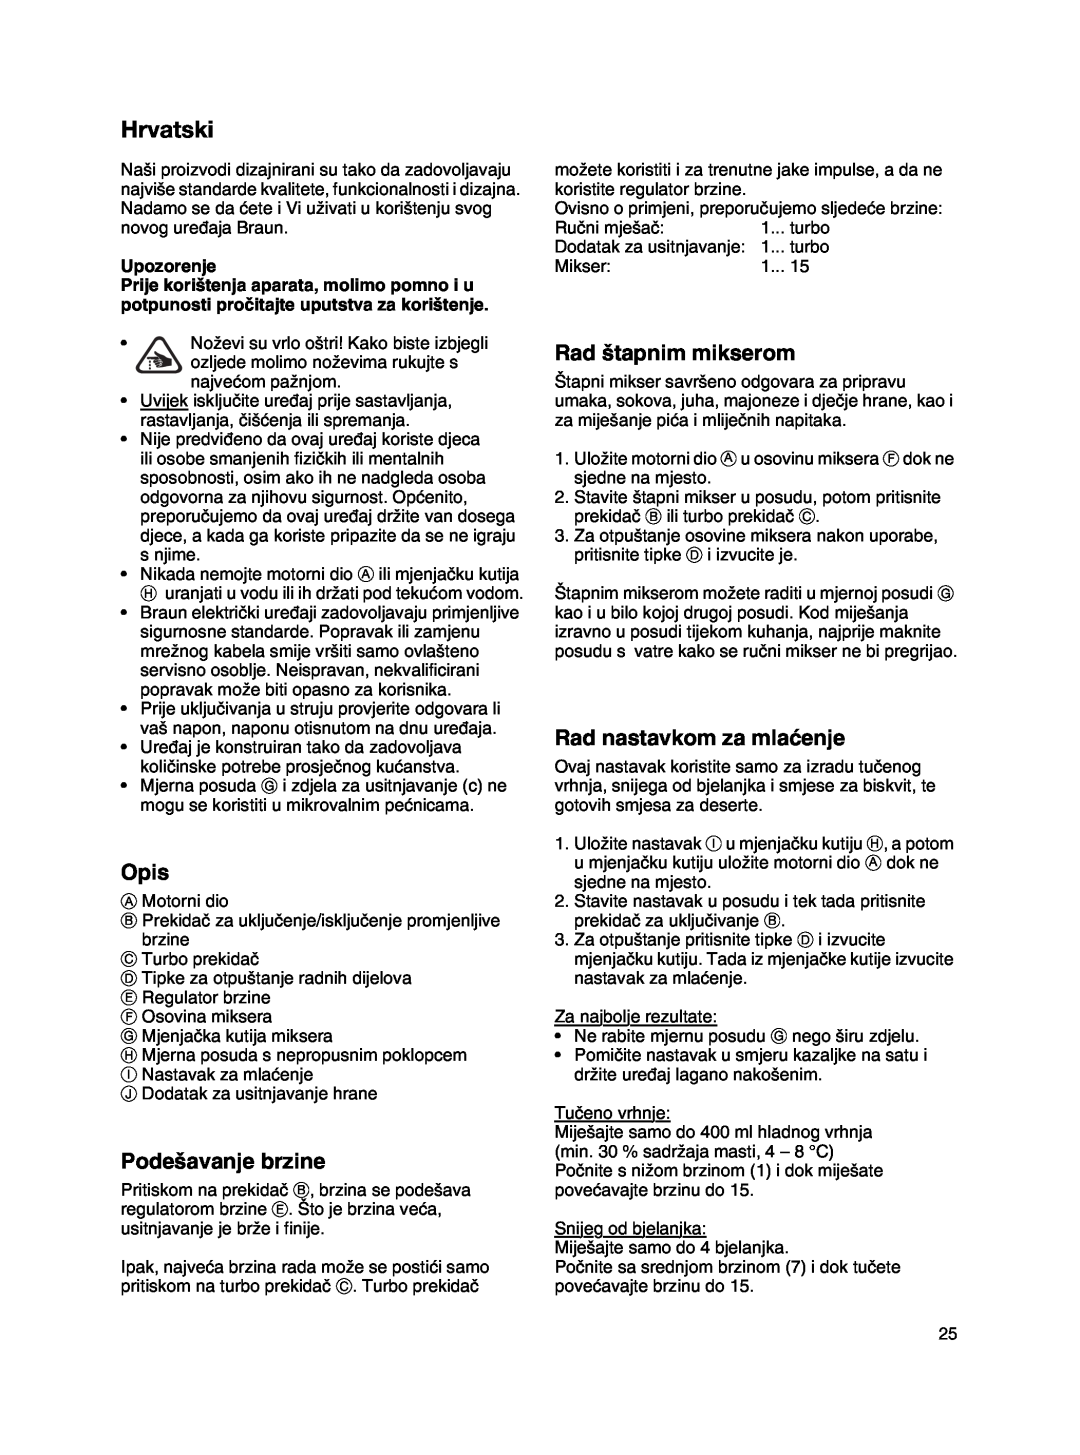 Braun MR 500 manual Hrvatski, Opis, Pode‰avanje brzine, Rad ‰tapnim mikserom, Rad nastavkom za mlaçenje, Upozorenje 